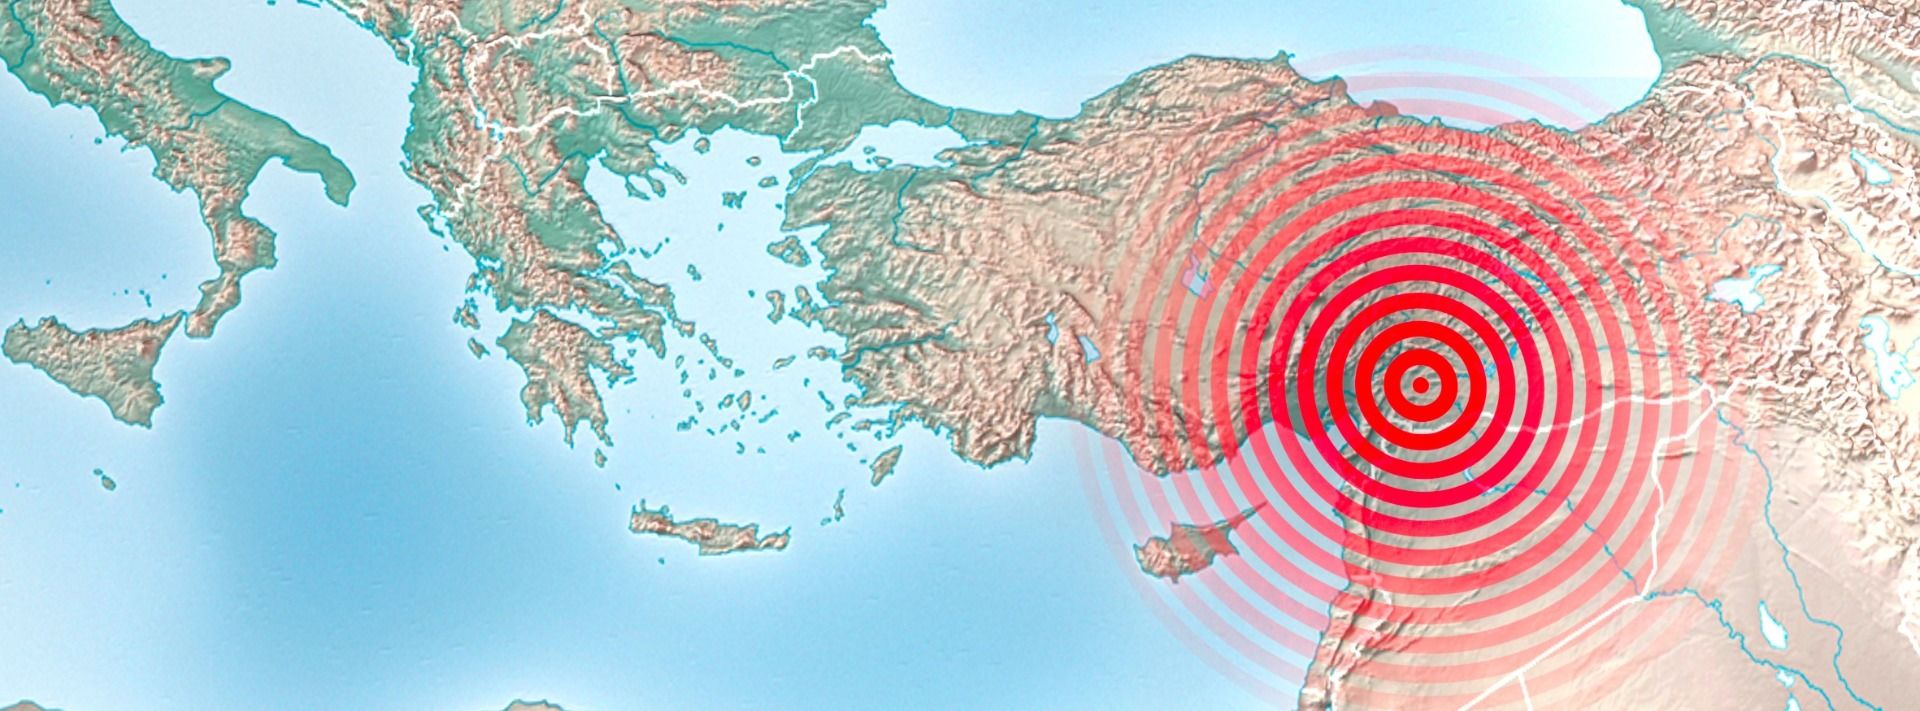 Sonderkollekte für Opfer der Erdbeben in der Türkei und in Syrien